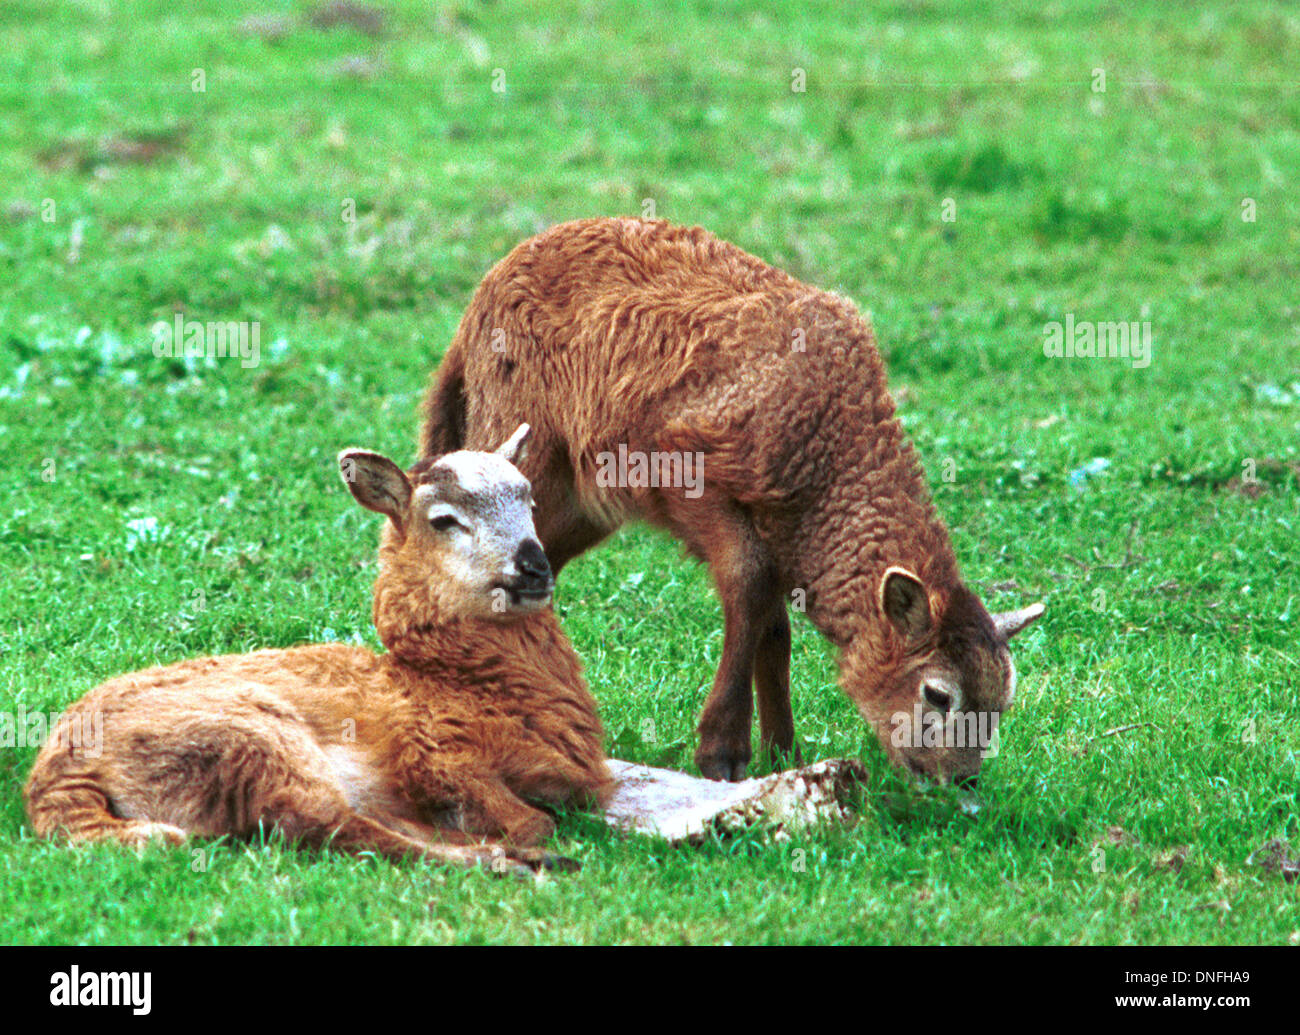 Lamm, Schaf, Schafe, Ovis Aries, sind Wiederkäuer, vierbeinigen Säugetieren Vieh, Artiodactyla sogar-toed Huftiere, Ram und Ewe, Stockfoto